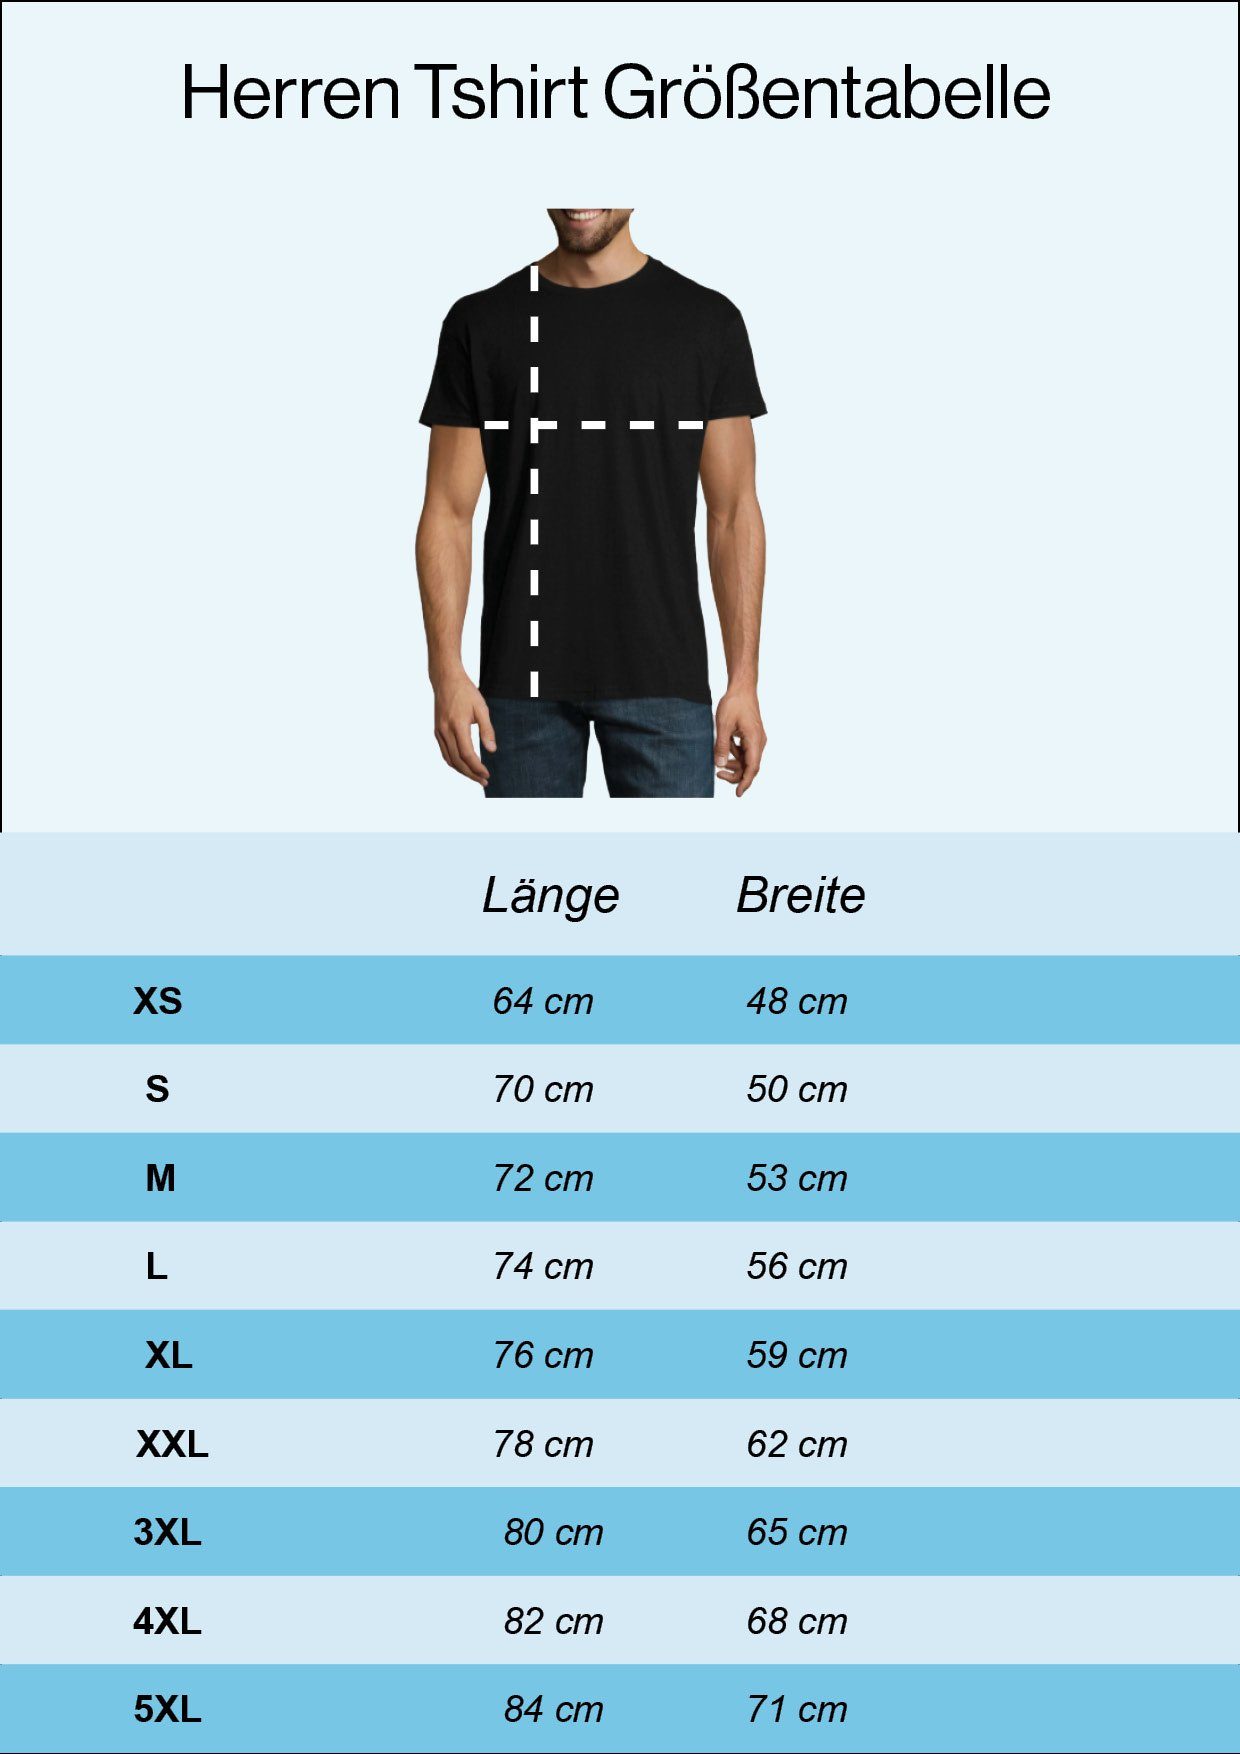 Youth Designz T-Shirt Allez Shirt Frontprint France Herren La Navyblau mit trendigem